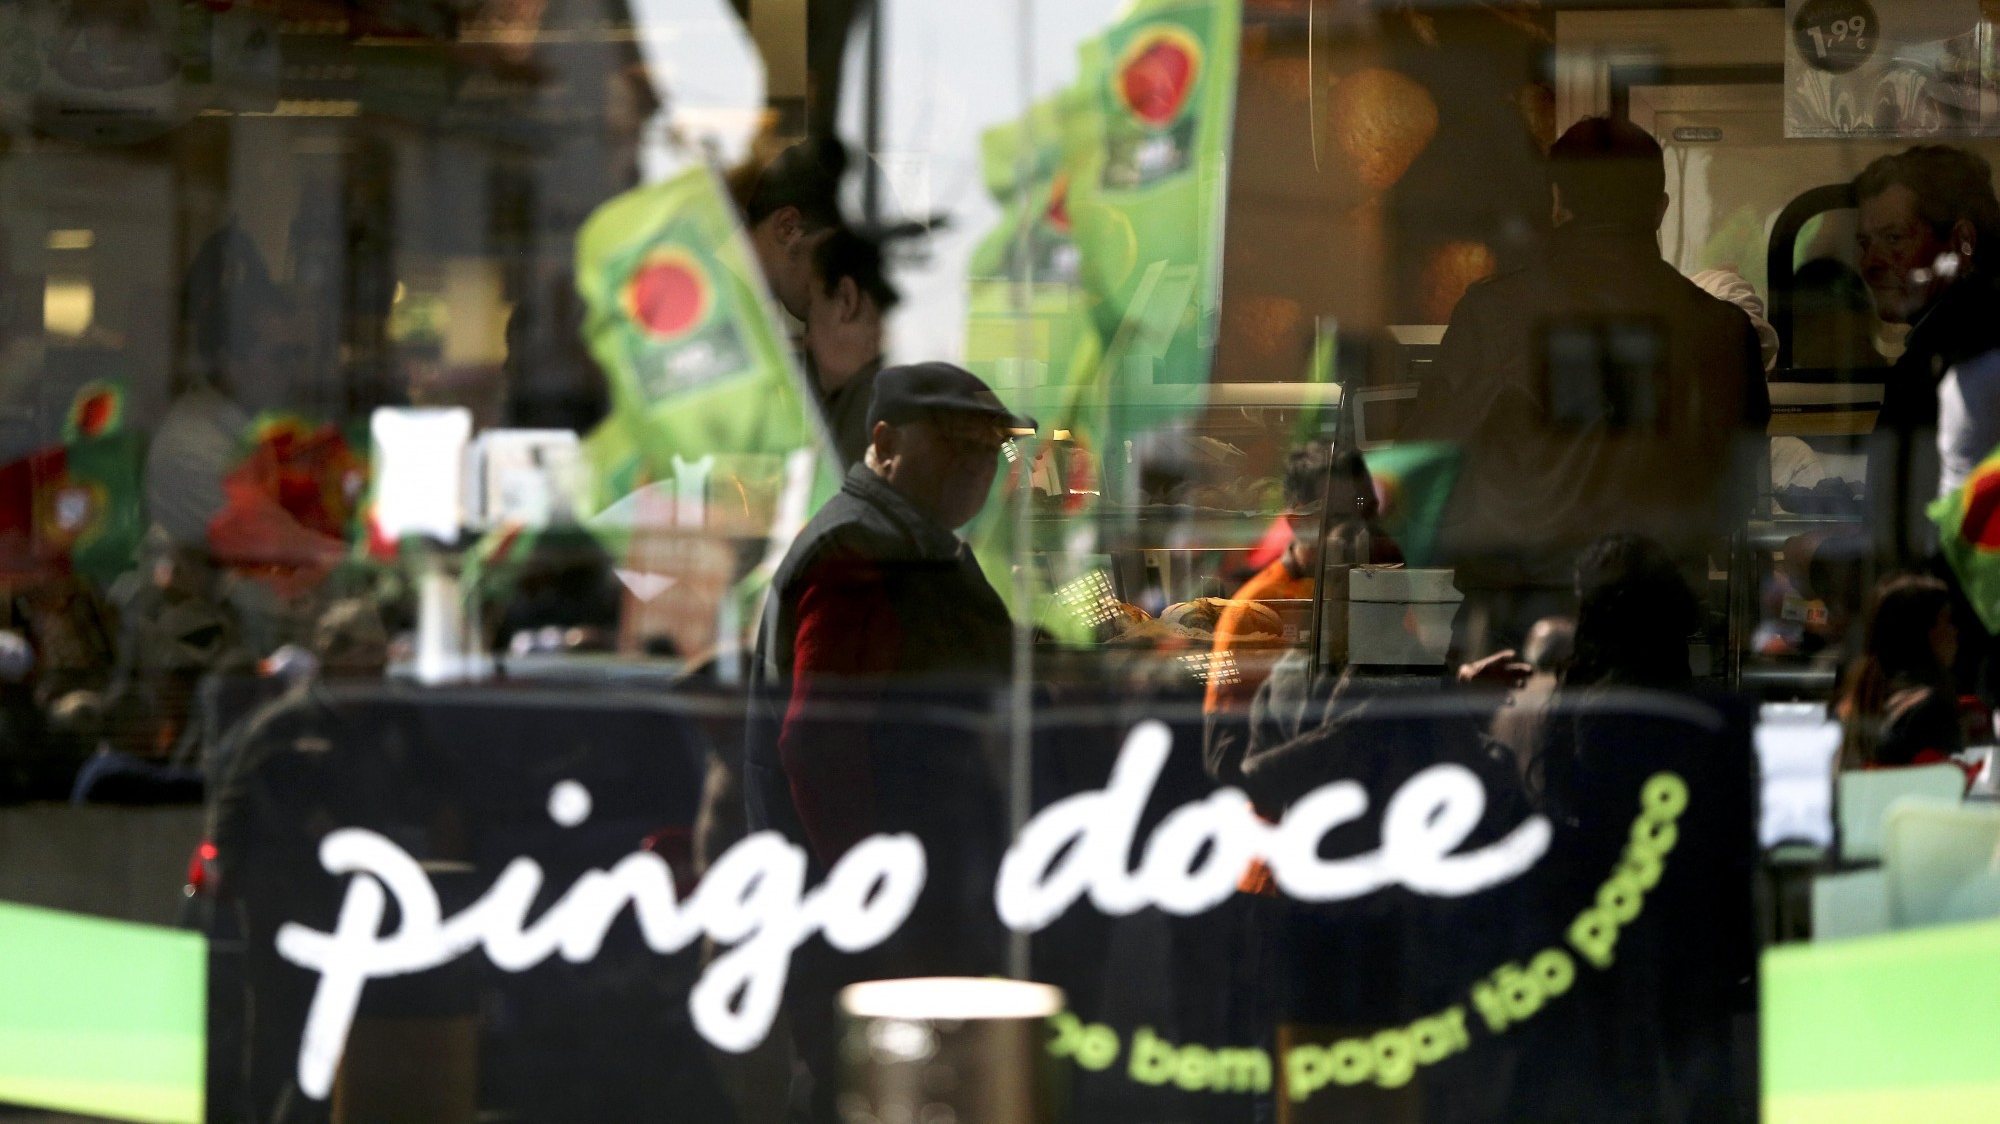 O Pingo Doce vai abrir a maioria das suas lojas às 6h30 e encerrar às 22h, procurando assim contribuir para evitar a concentração de pessoas